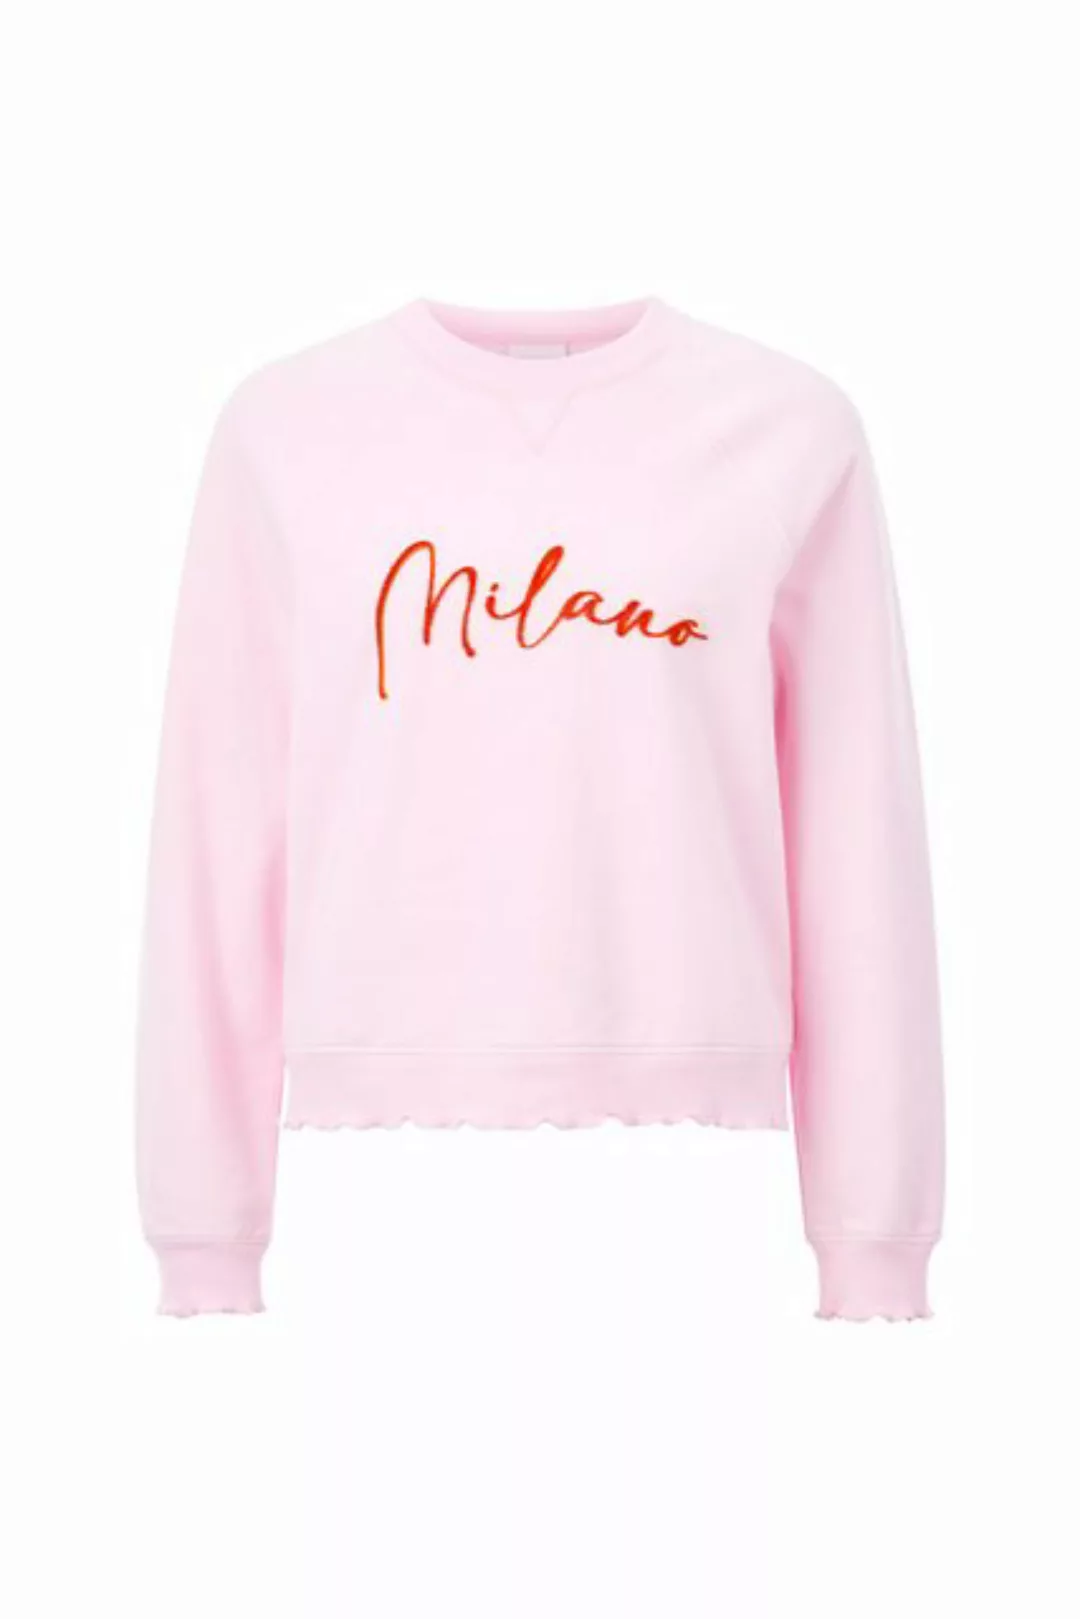 Rich & Royal Sweatshirt Sweatshirt with application Milano, pearl white günstig online kaufen